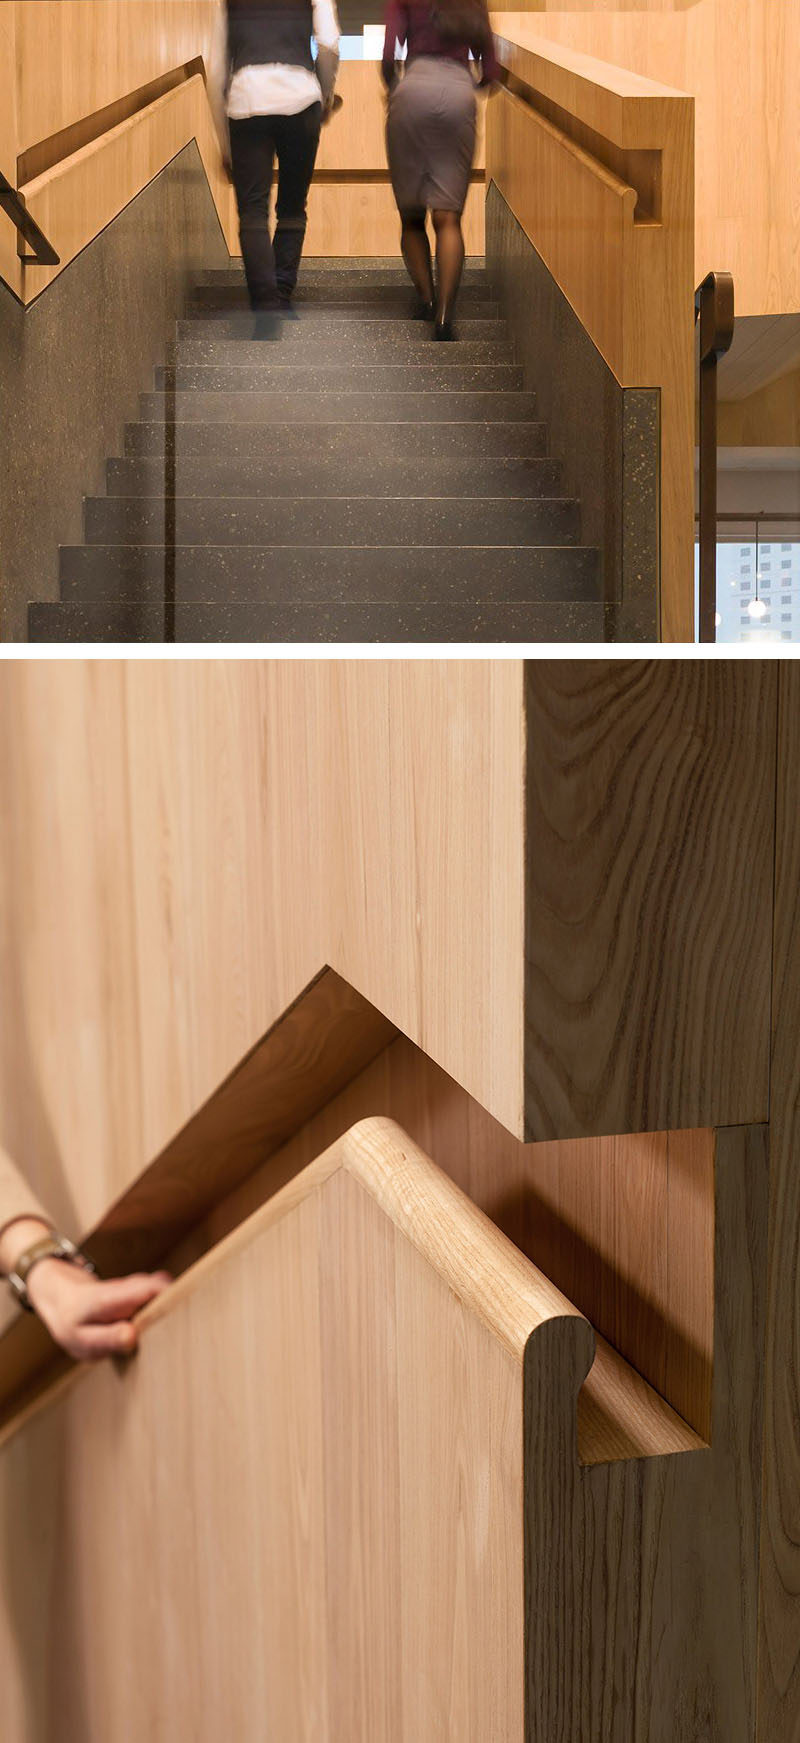 Идеи дизайна лестницы - 9 примеров встроенных перил // В этом офисе в Гонконге переход от латунных перил к встроенным деревянным перилам. #BuiltInHandrail #HandrailIdeas #HandrailDesign #StairDesign # Поручни